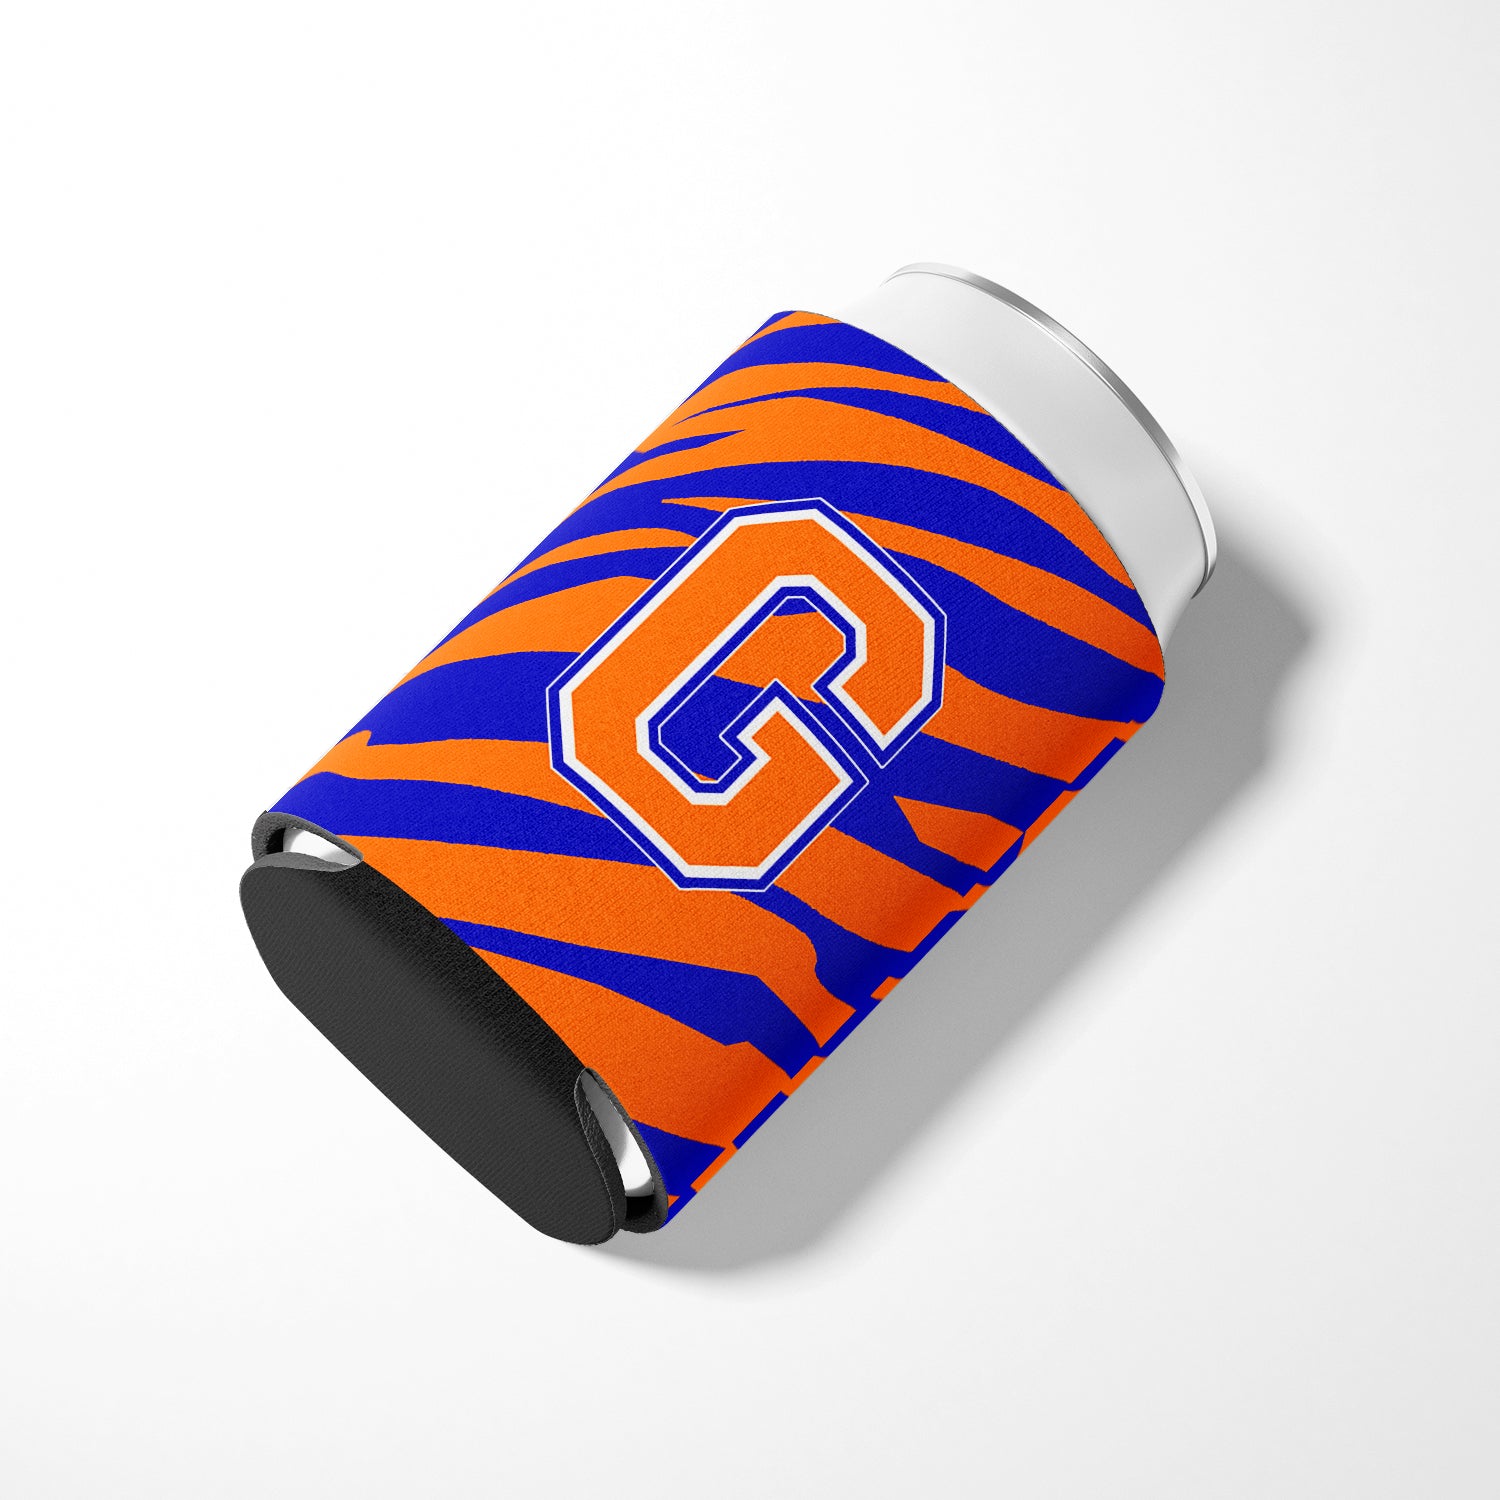 Letter G Initial Monogram Tiger Stripe Blue Orange Can or Bottle Beverage Insulator Hugger.